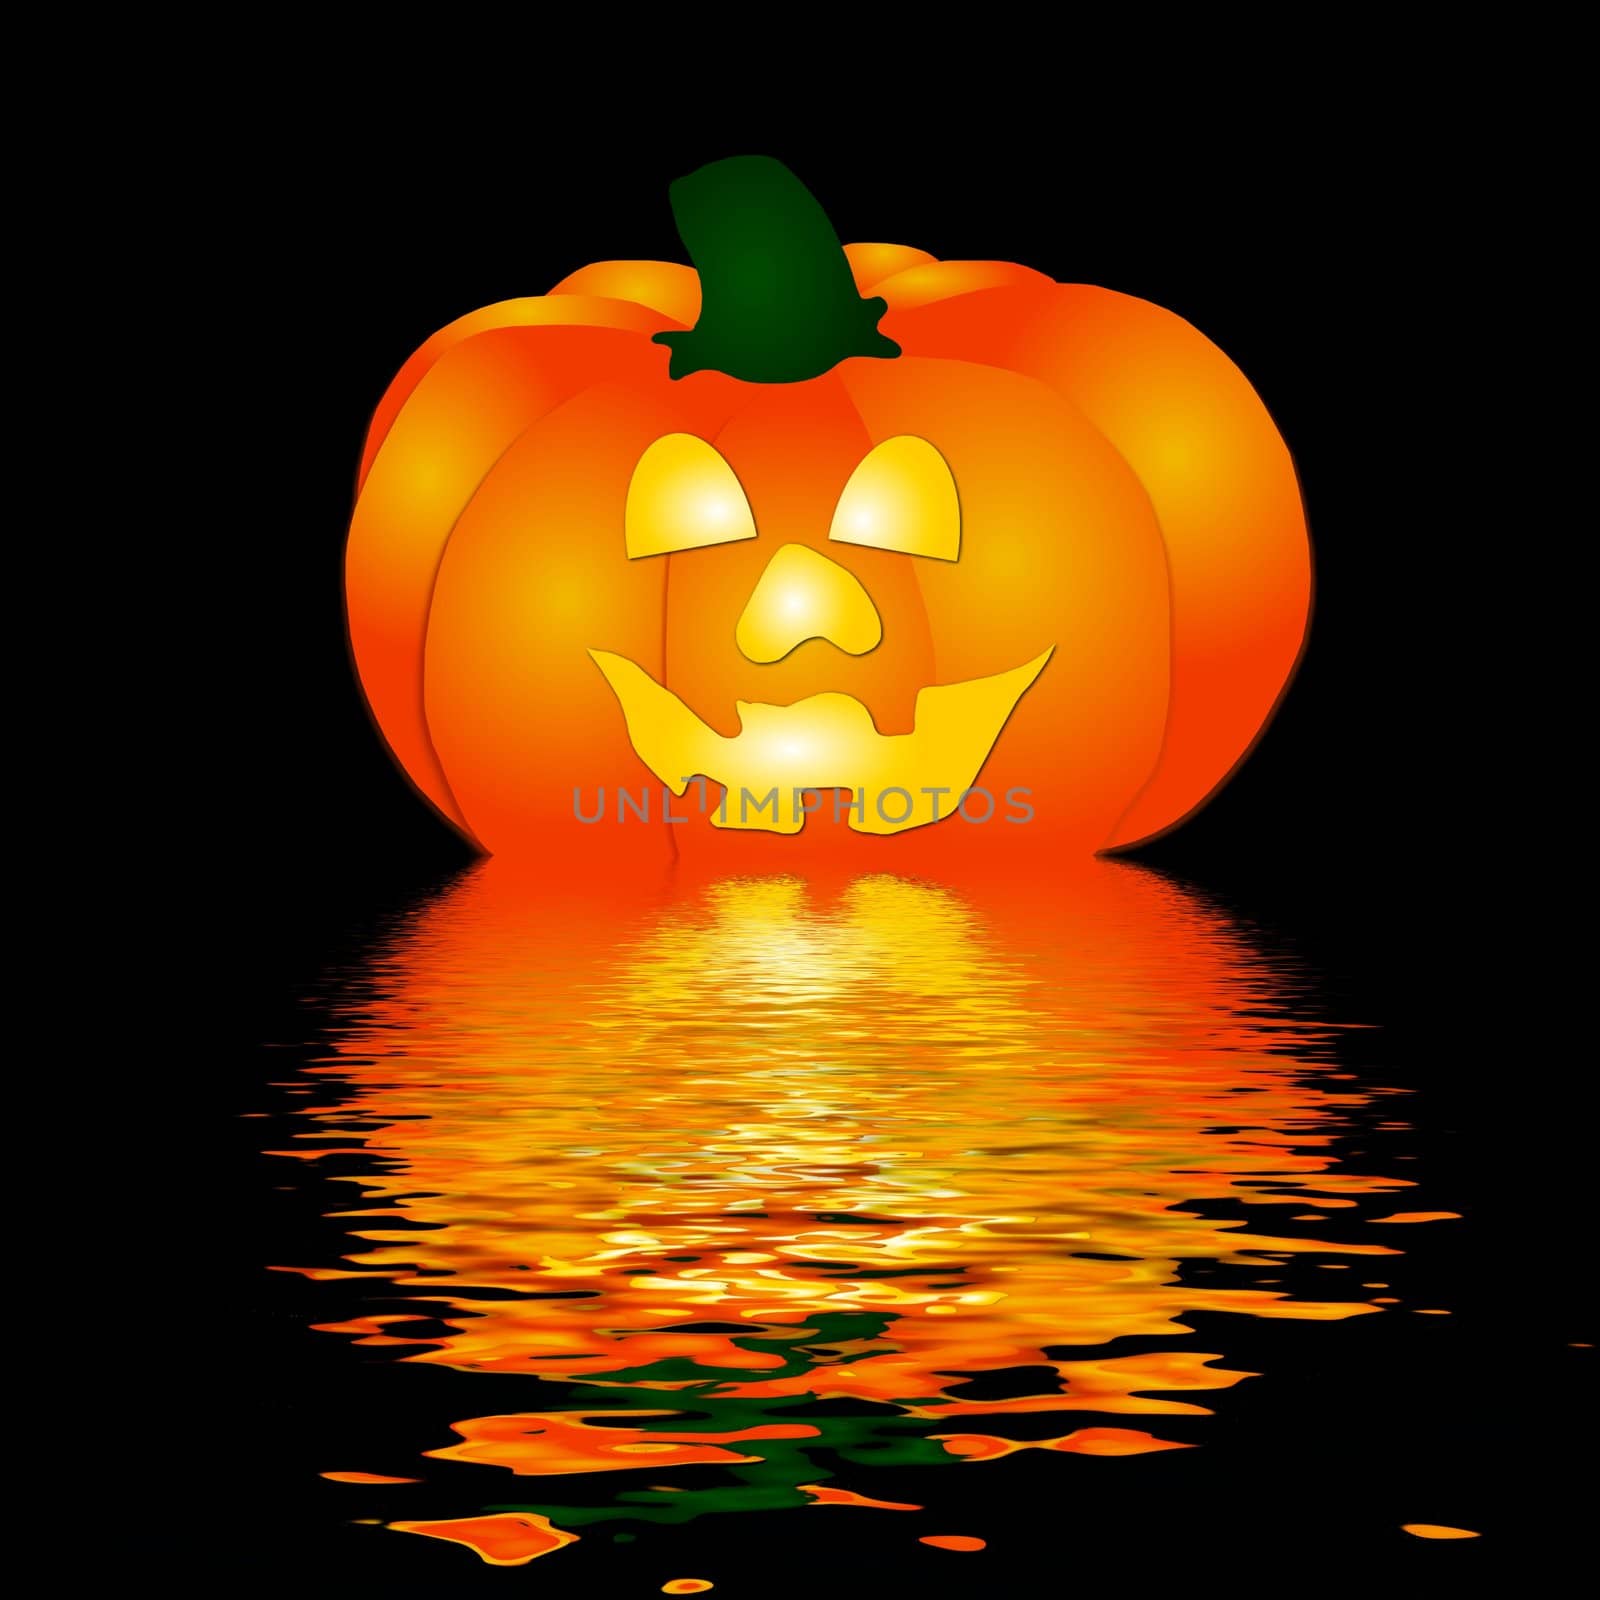  Halloween Pumpkin in water